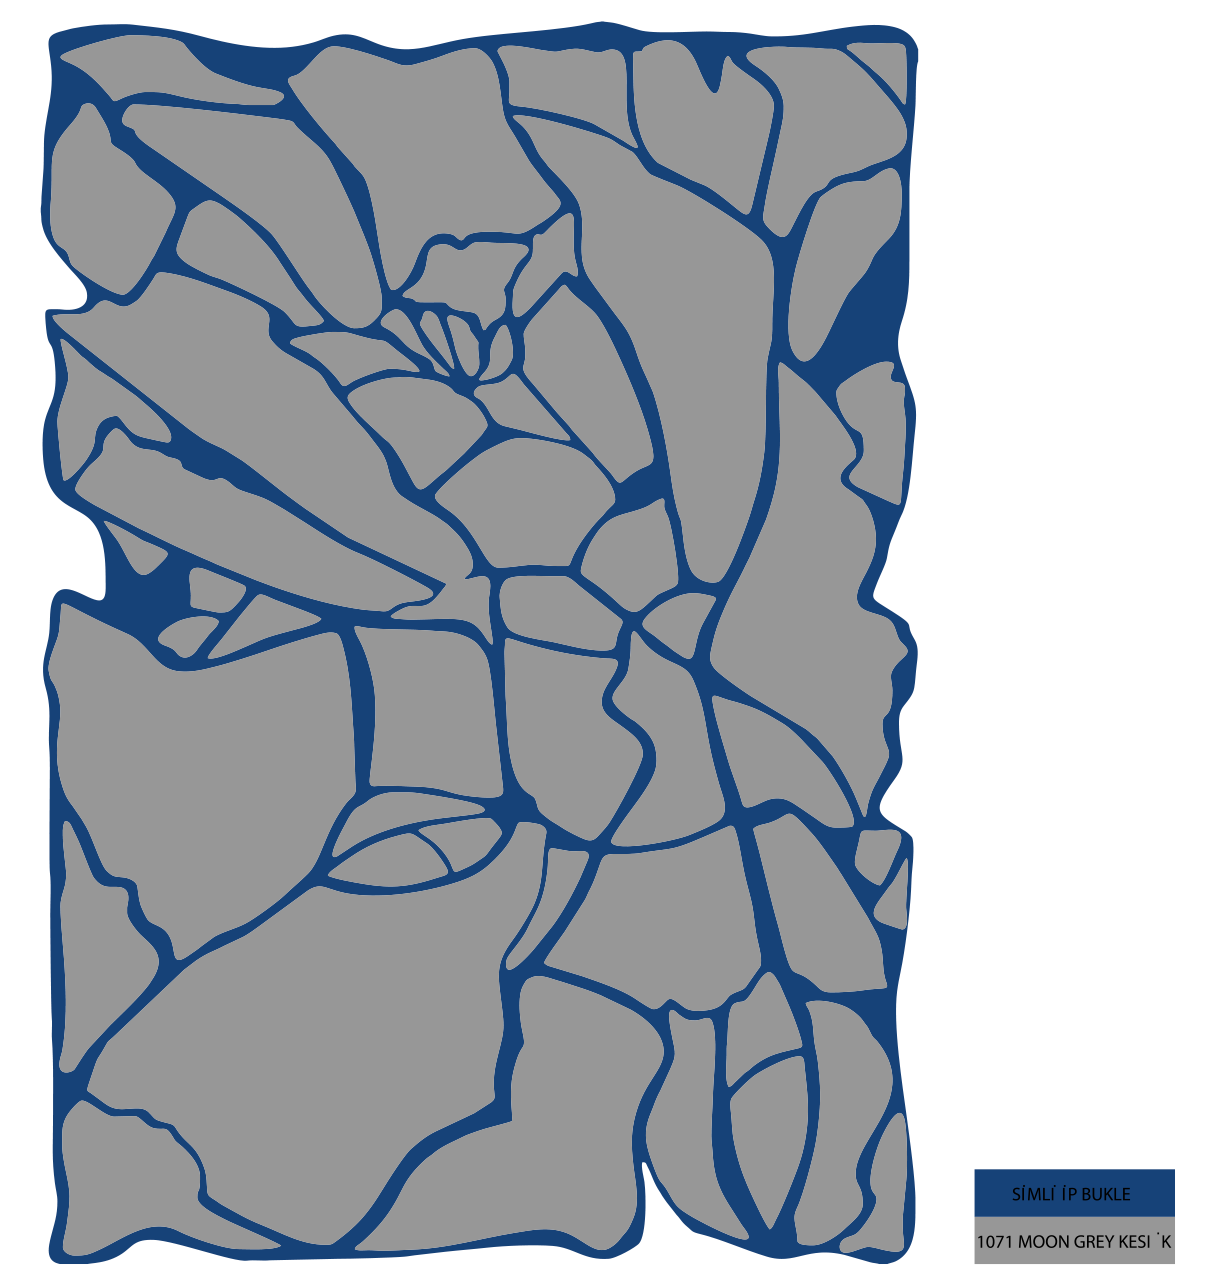 Alfombra moderna azul y gris - Philae